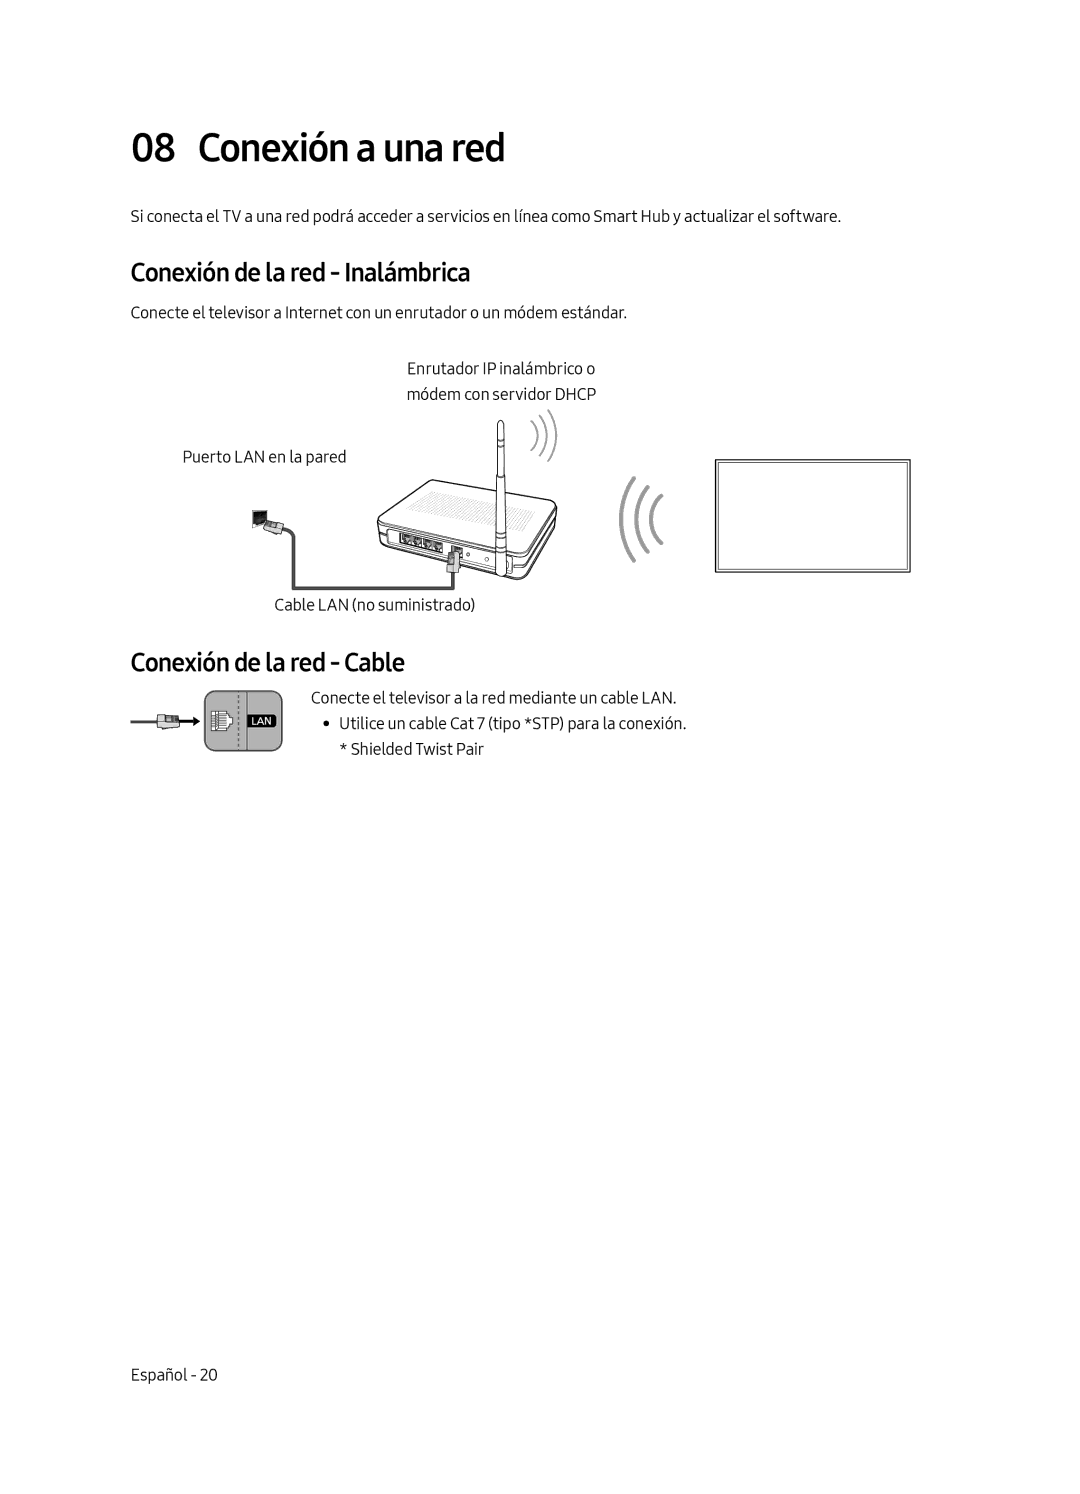 Samsung UE43LS003AUXZG, UE43LS003AUXXC manual Conexión a una red, Conexión de la red Inalámbrica, Conexión de la red Cable 